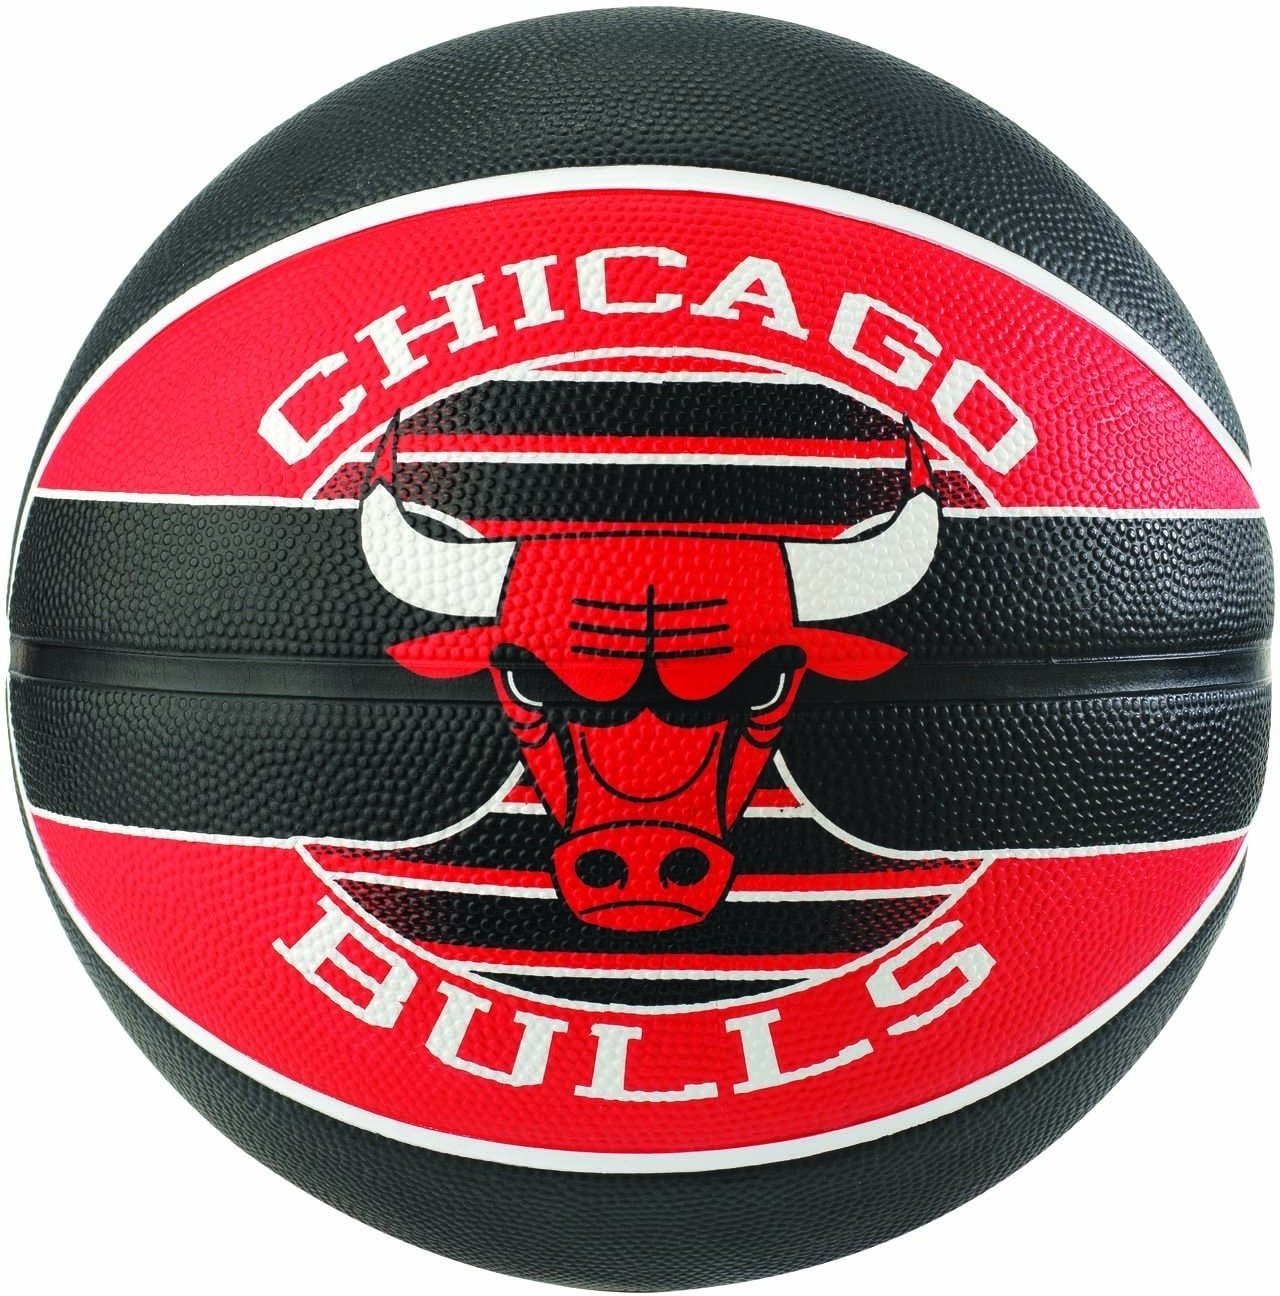 Баскетбольный мяч Spalding Chicago Bulls, рр 7